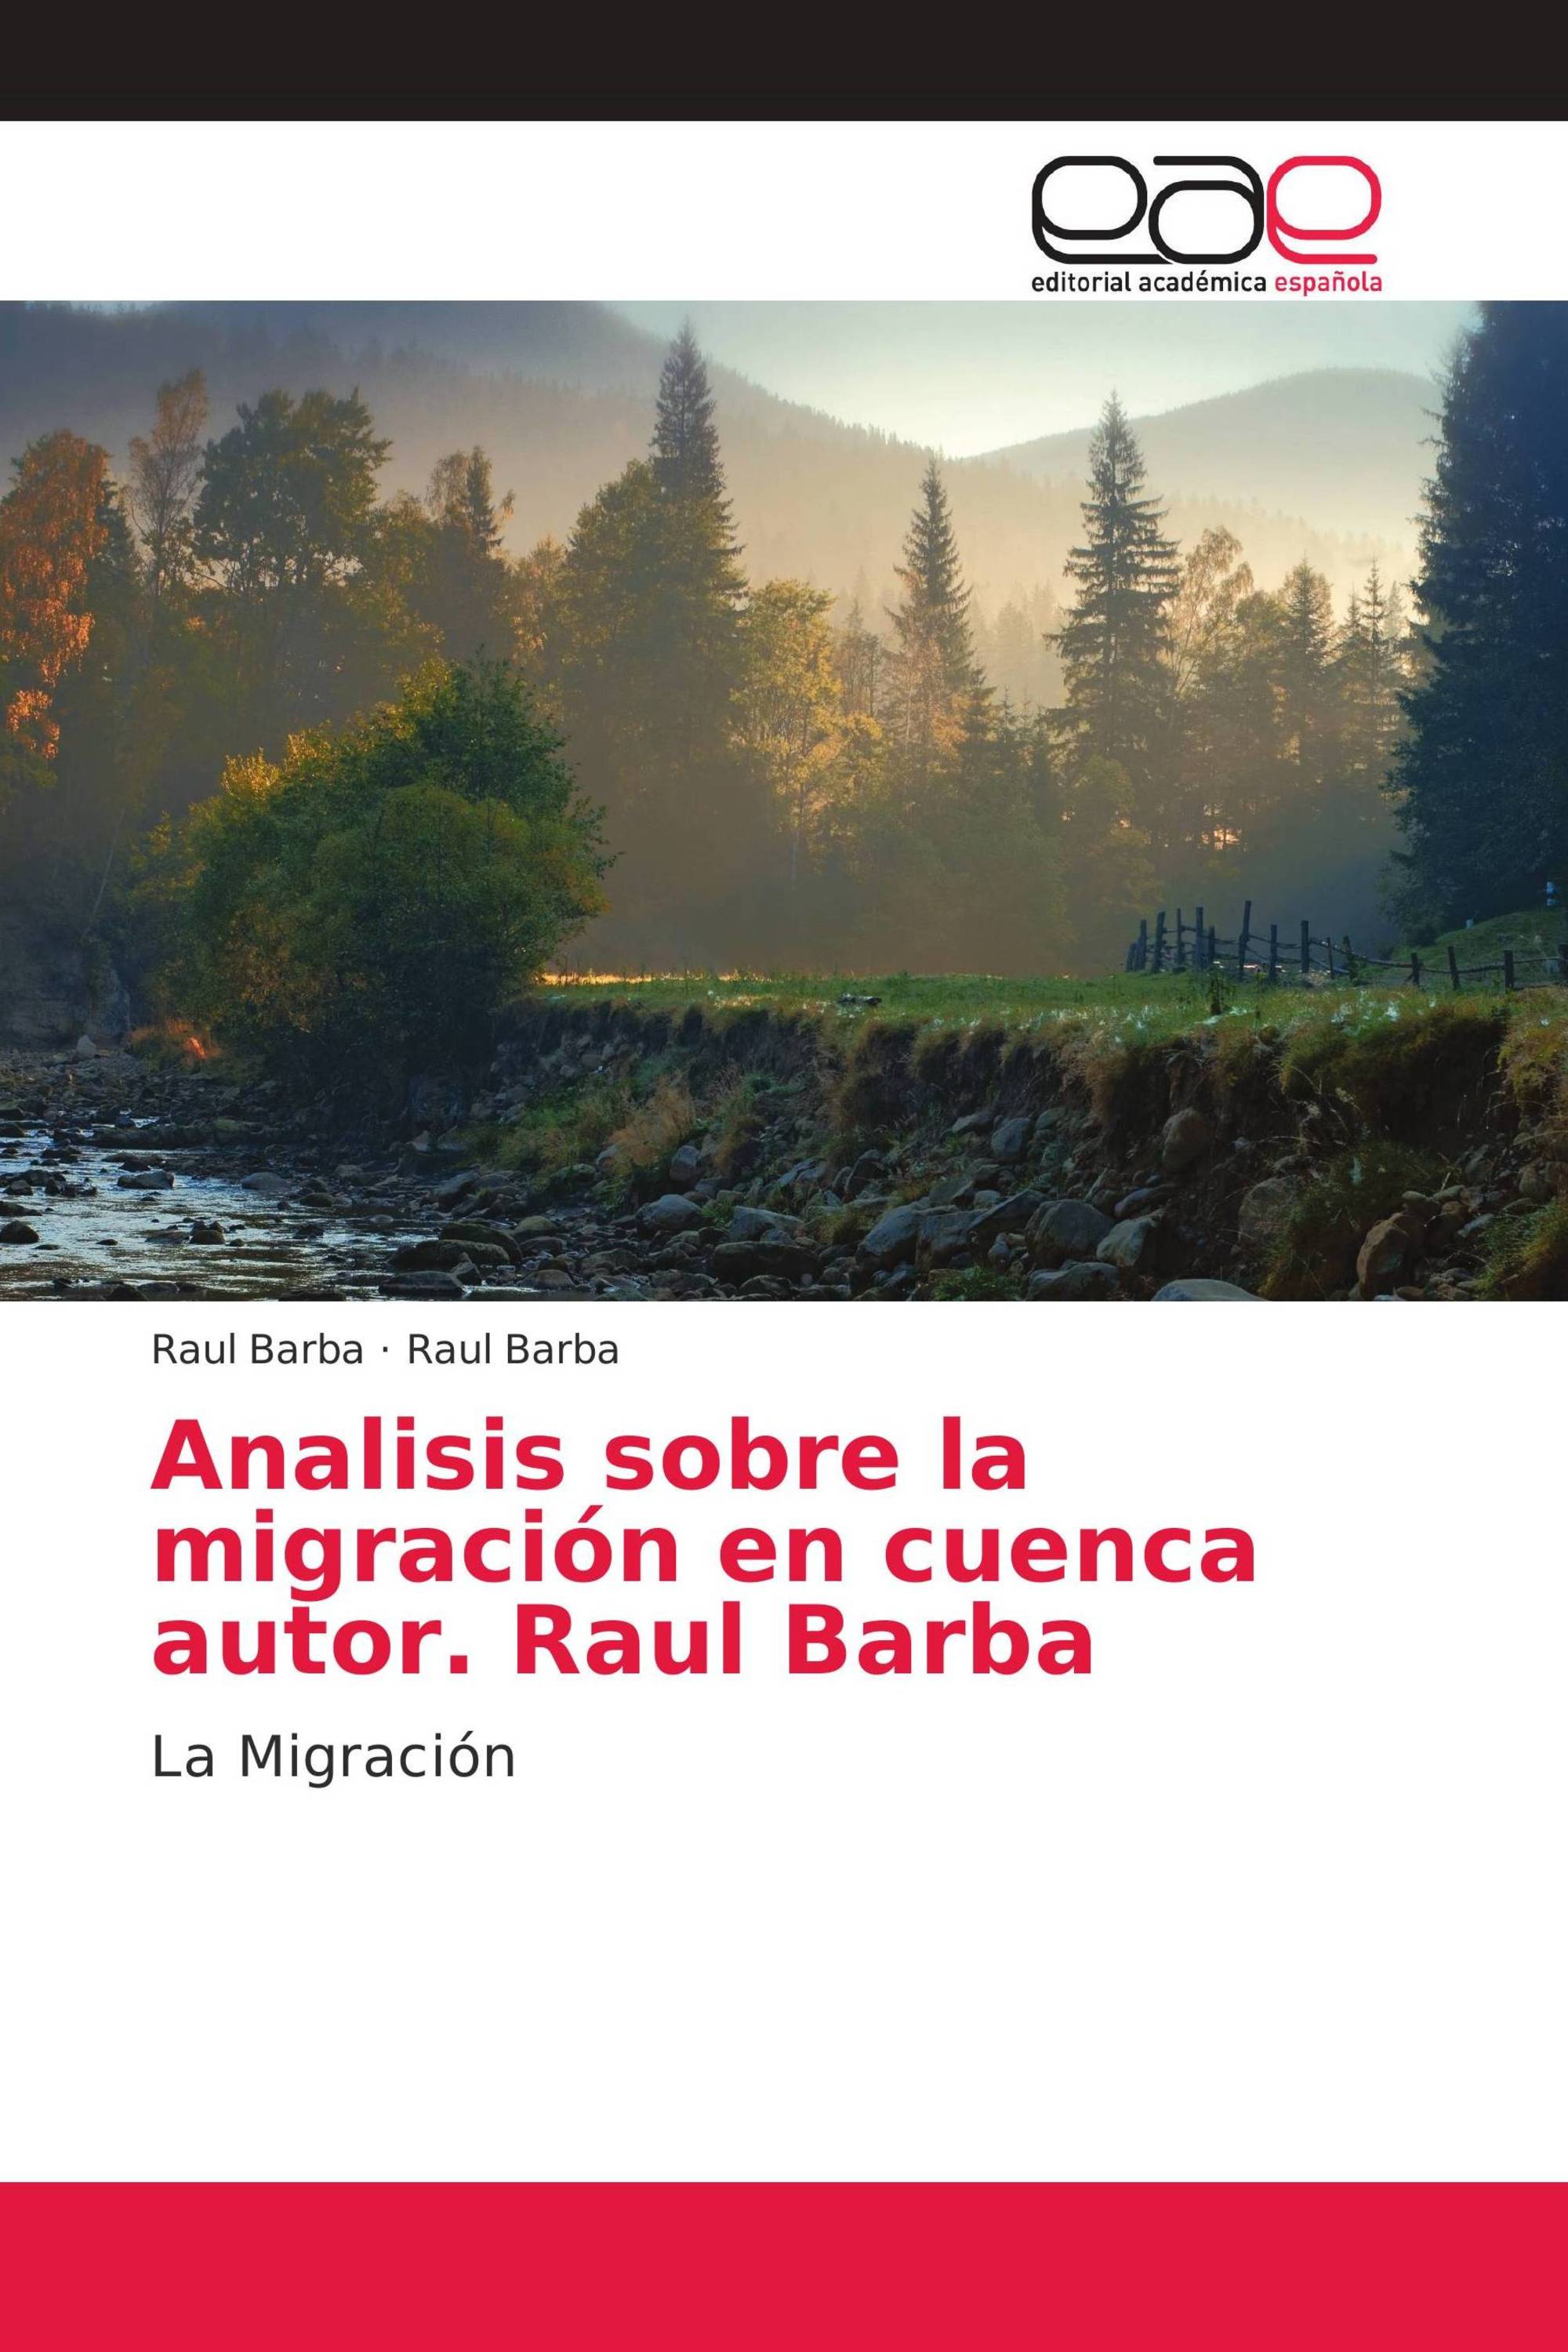 Analisis sobre la migración en cuenca autor. Raul Barba